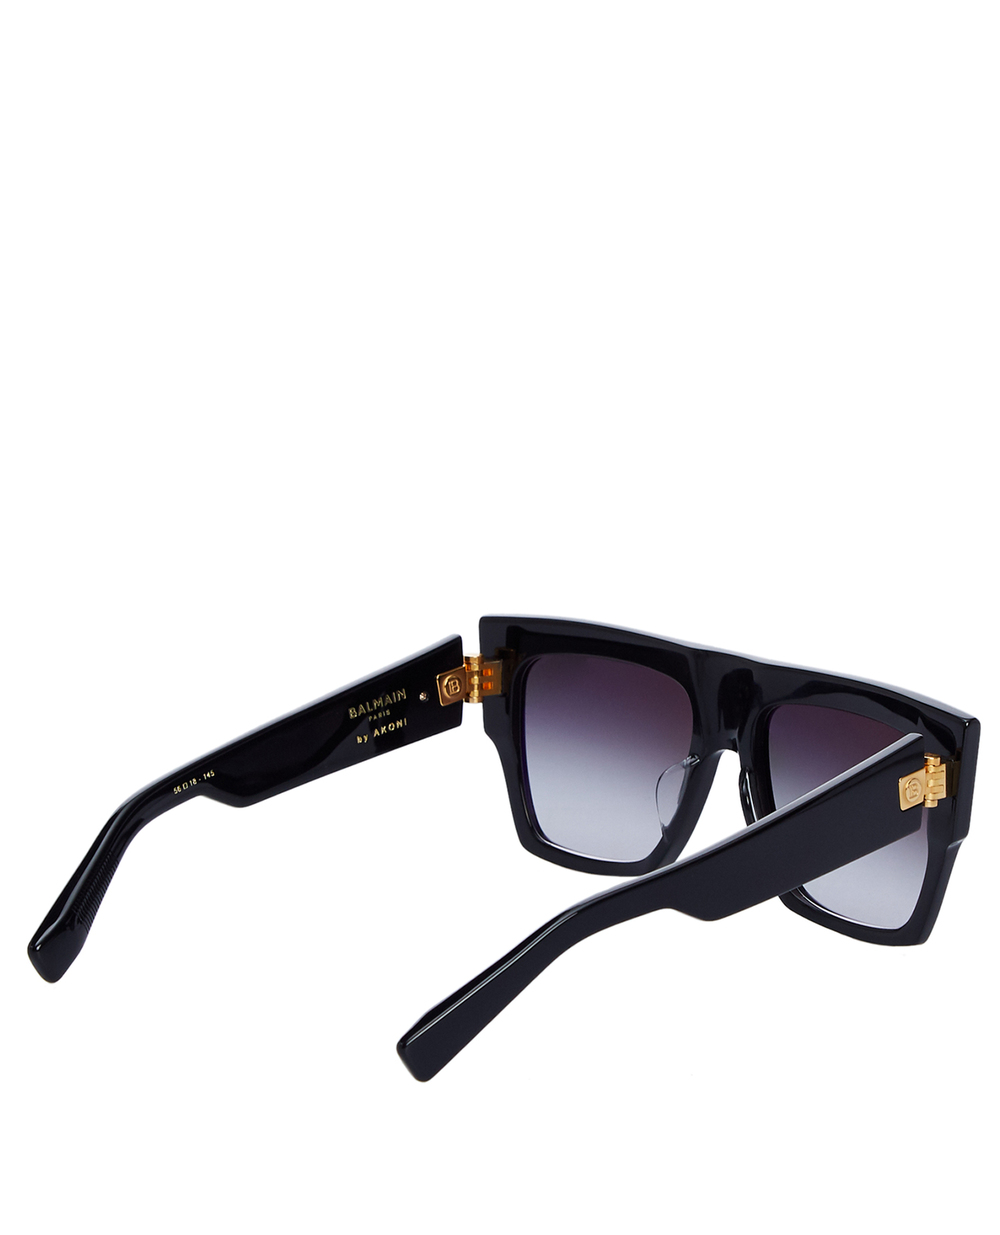 Солнцезащитные очки Balmain BPS-100A-56, черный цвет • Купить в интернет-магазине Kameron